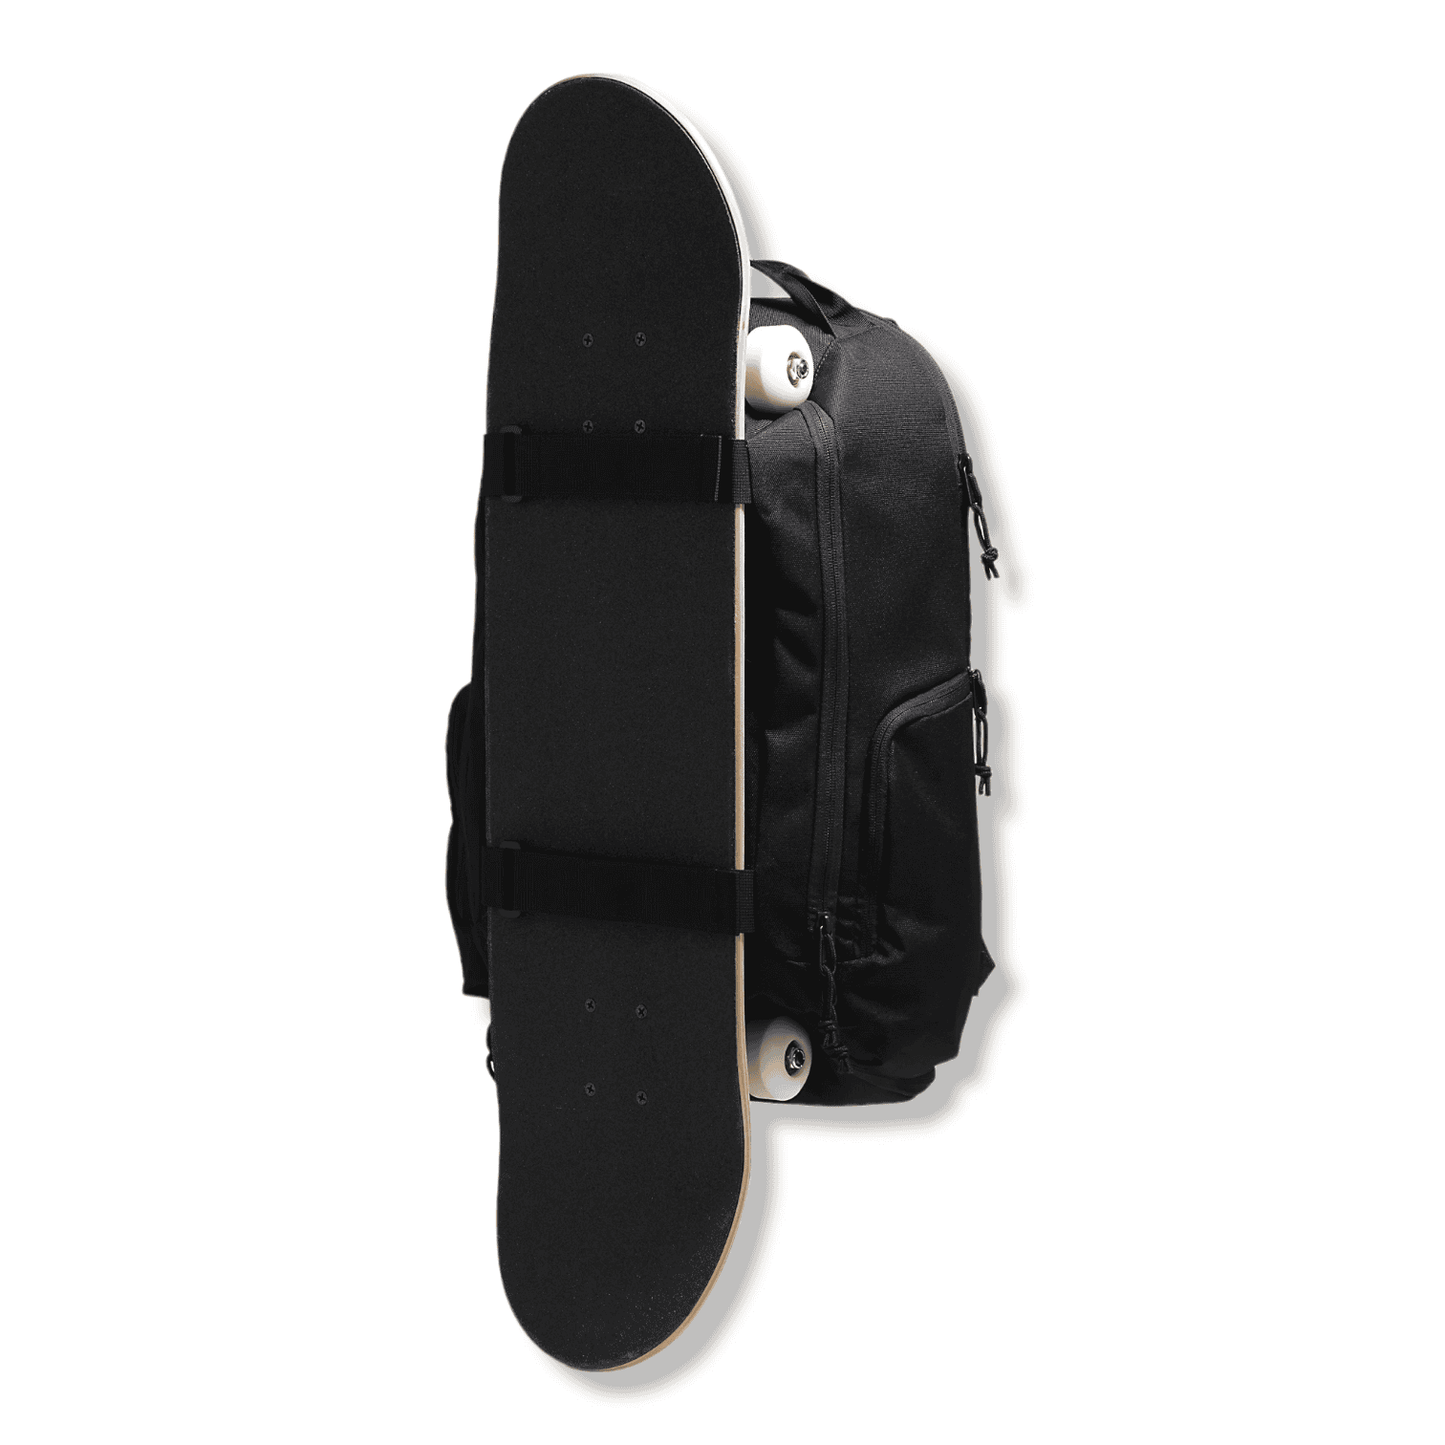 Vans | DX Skatepack Backpack - Black